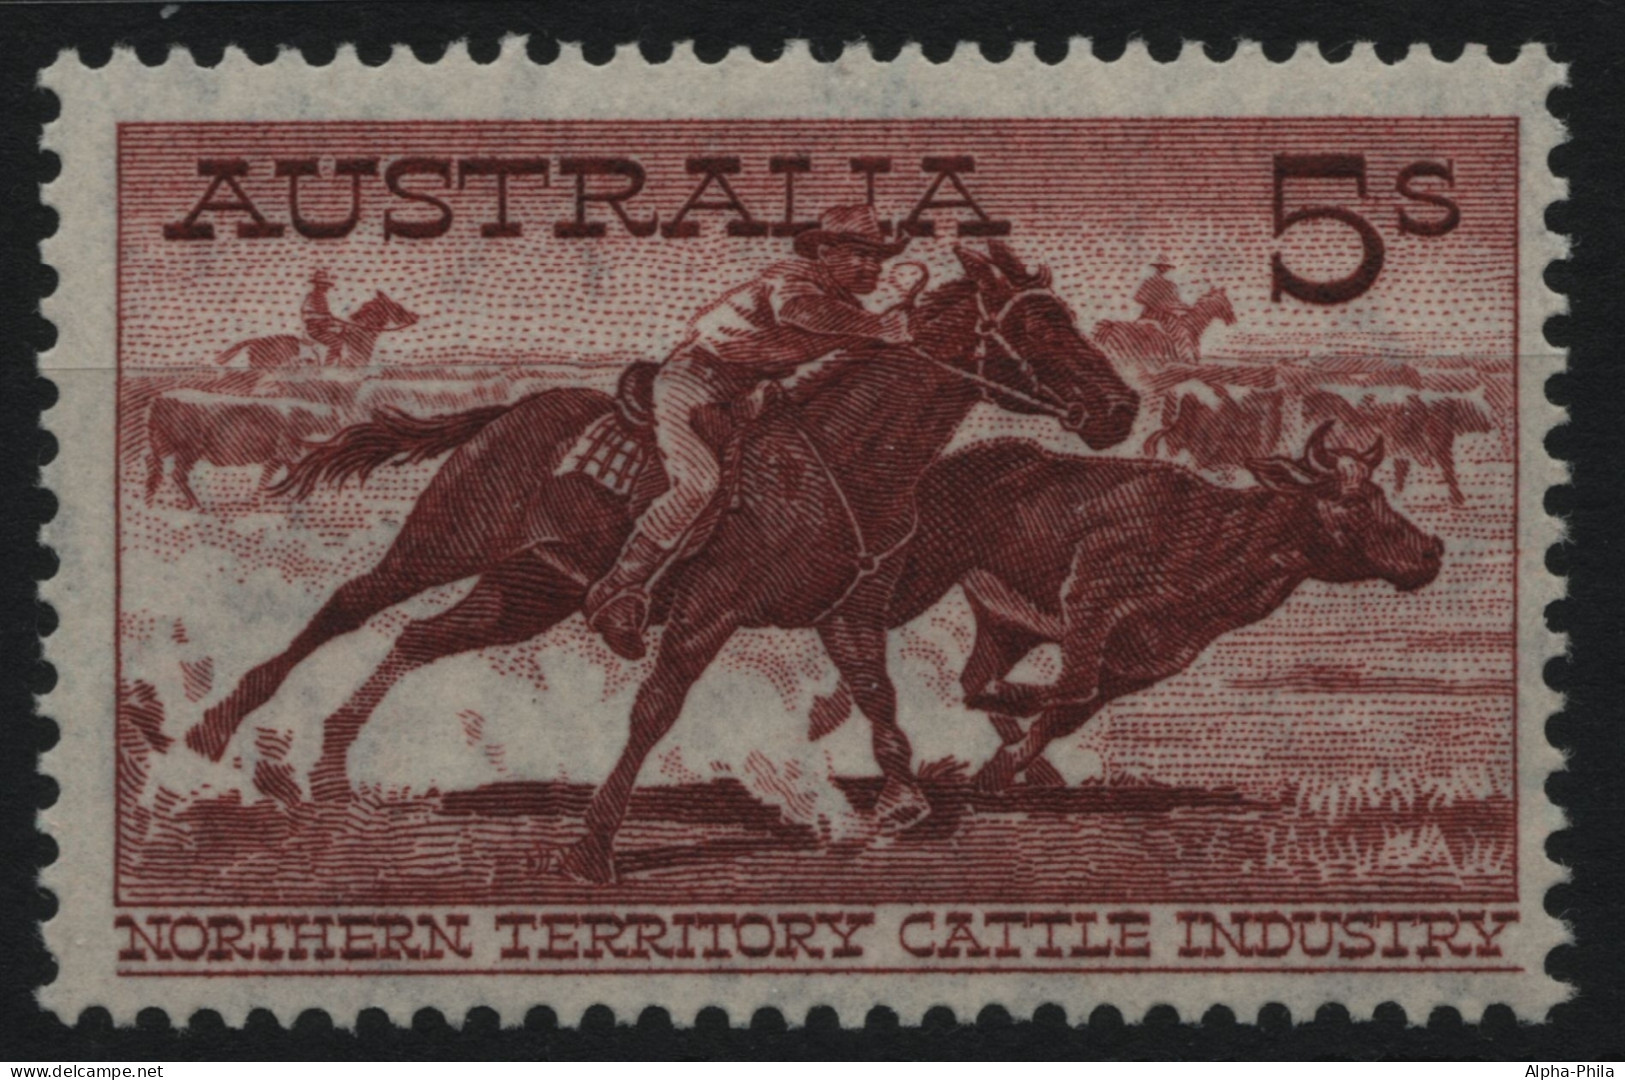 Australien 1961 - Mi-Nr. 313 ** - MNH - Pferde / Horses - Neufs